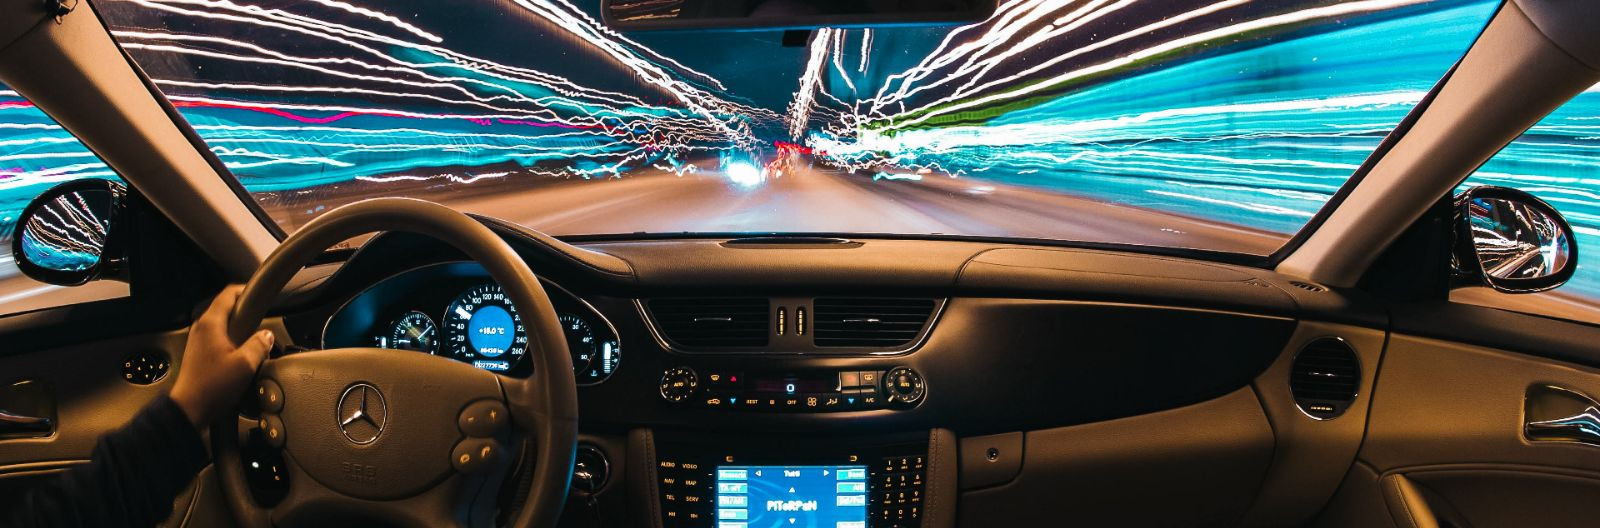   Augmenteeritud reaalsuse tehnoloogia on muutumas üha populaarsemaks, ja seda ka taksoteenuste valdkonnas. AR võimaldab reaalajas kuvada digitaalset teavet rea